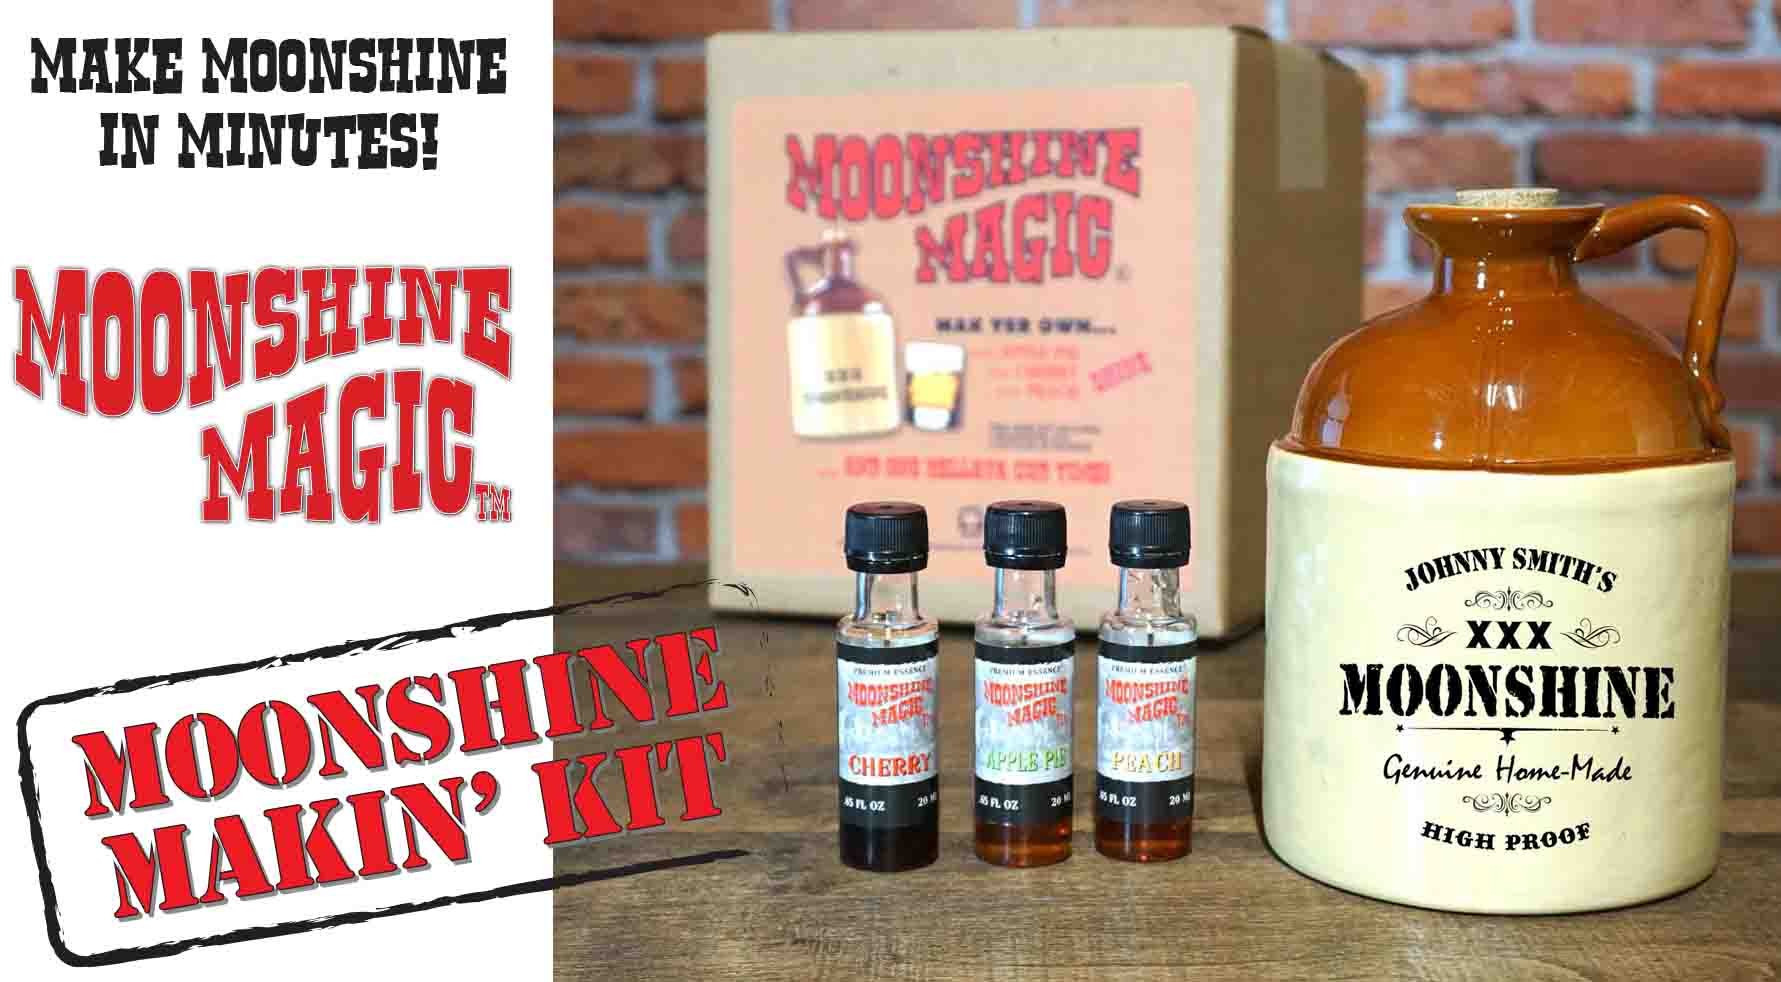 Moonshine Magic™ Moonshine Making Kits